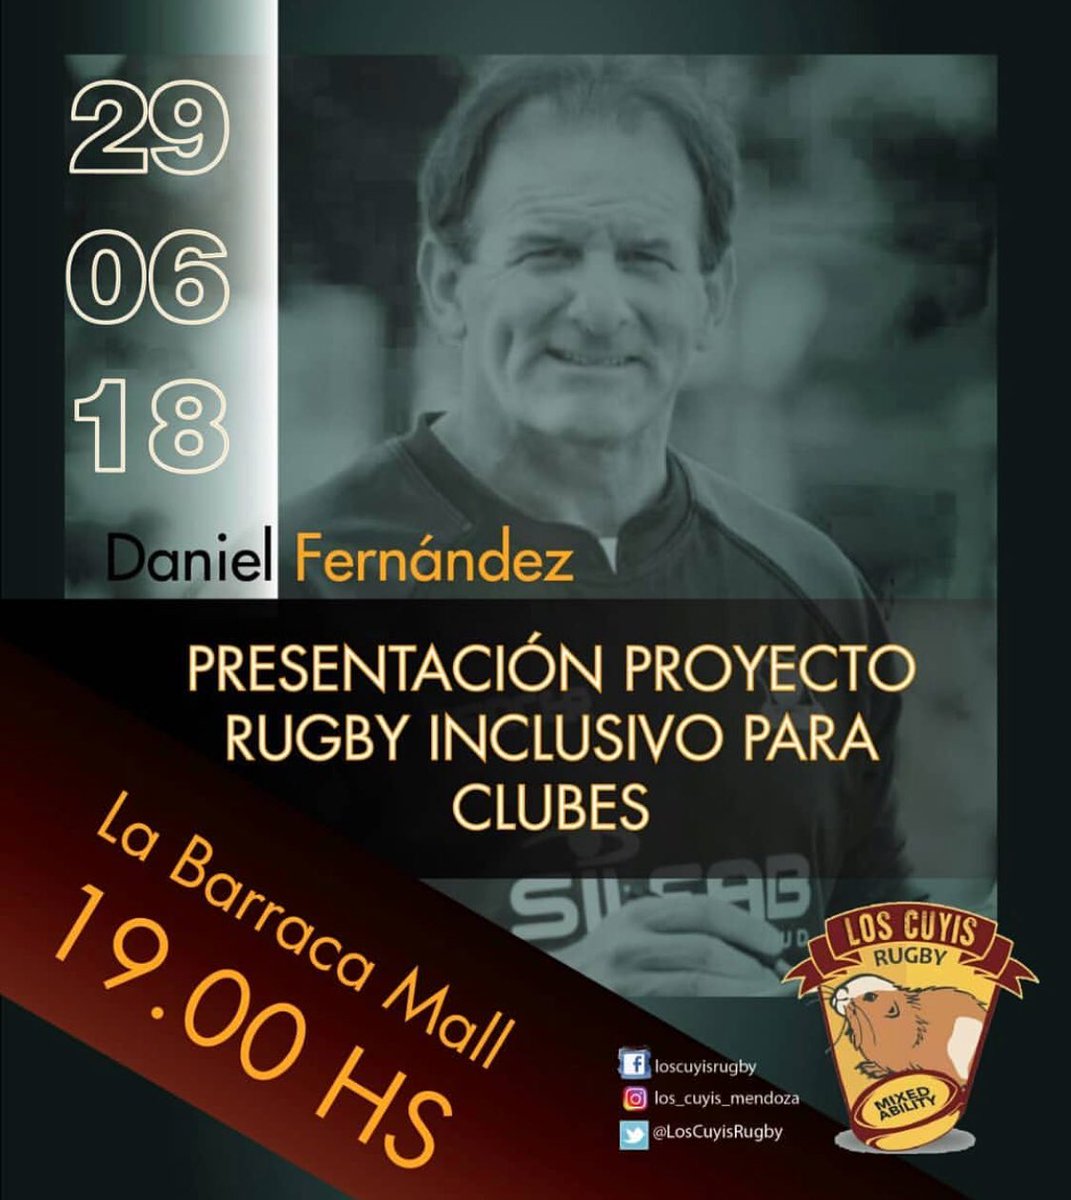 📣 Atención #Mendoza !! Este Viernes #DanielFernandez estará presentando el proyecto #Pumpasxv #Rugby #Inclusivo 🏉en @labarracamall 
19hs 
@LosCuyisRugby 
@marce_goldman 
#AbriendoCaminos 
#mixedAbilityRugbyArgentina 🇦🇷